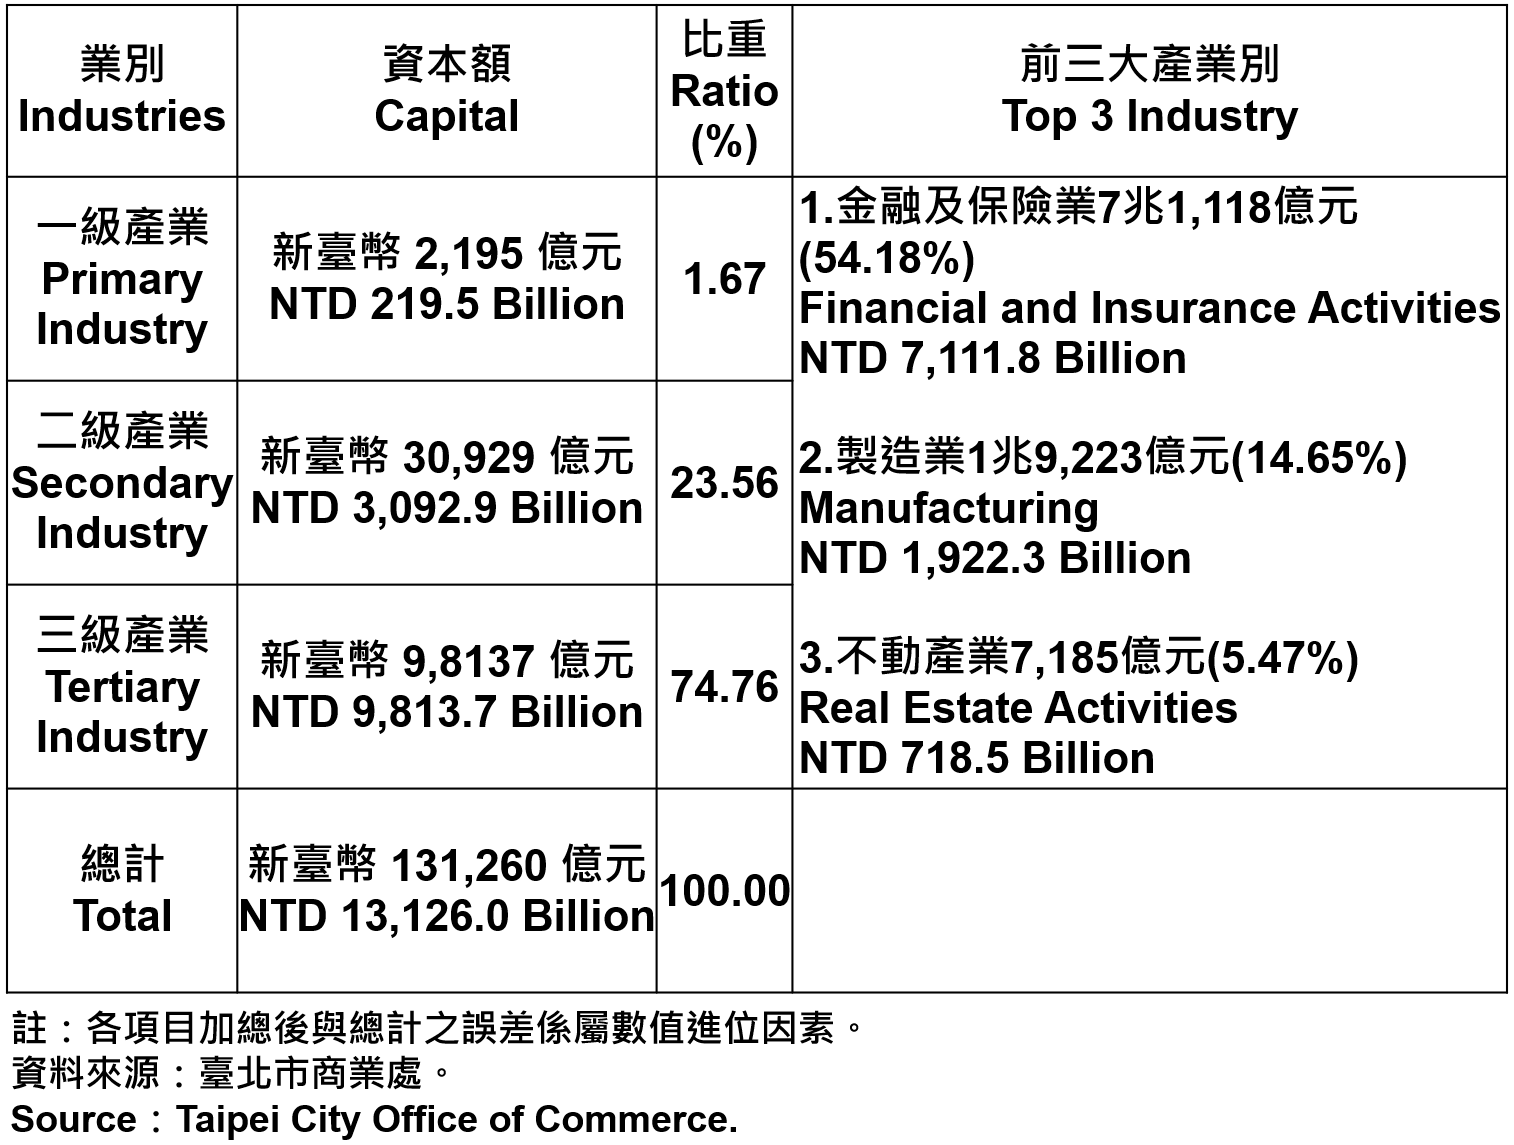 臺北市登記之公司資本總額—2020 Capital for the Companies and Firms Registered in Taipei City—2020